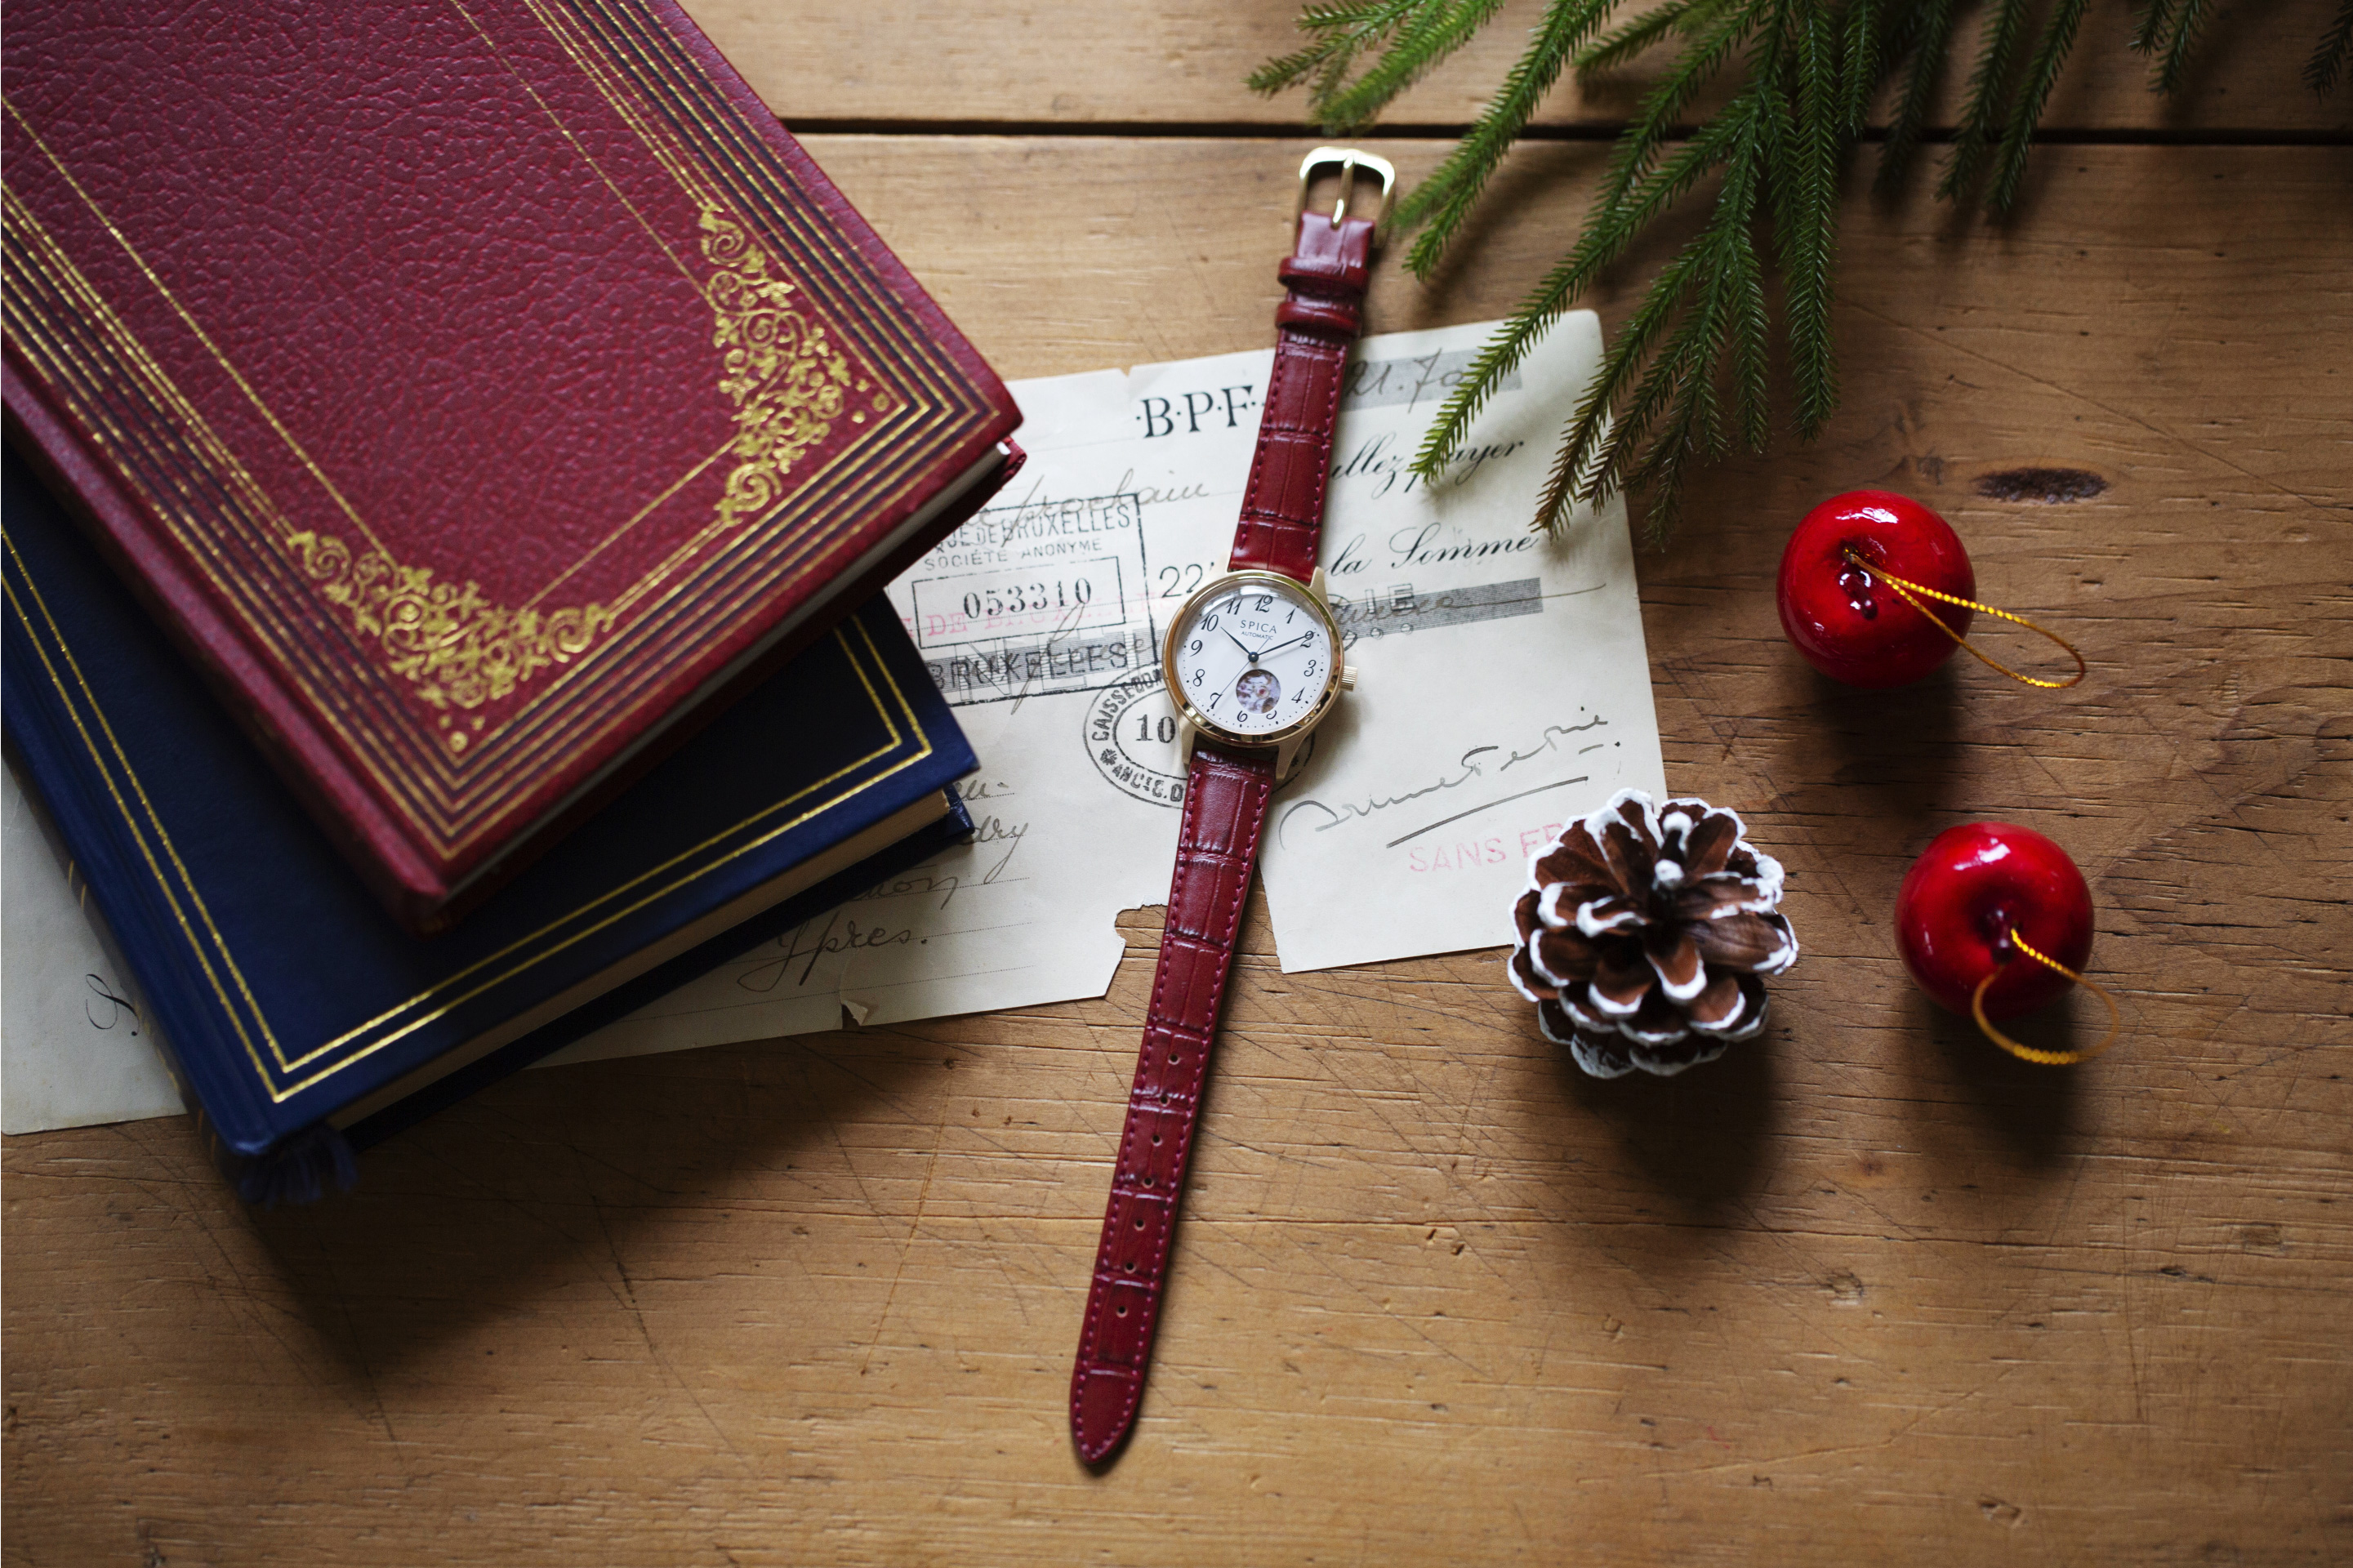 海外最新時計腕時計のセレクトショップ「TiCTAC」から、オリジナルブランド「SPICA